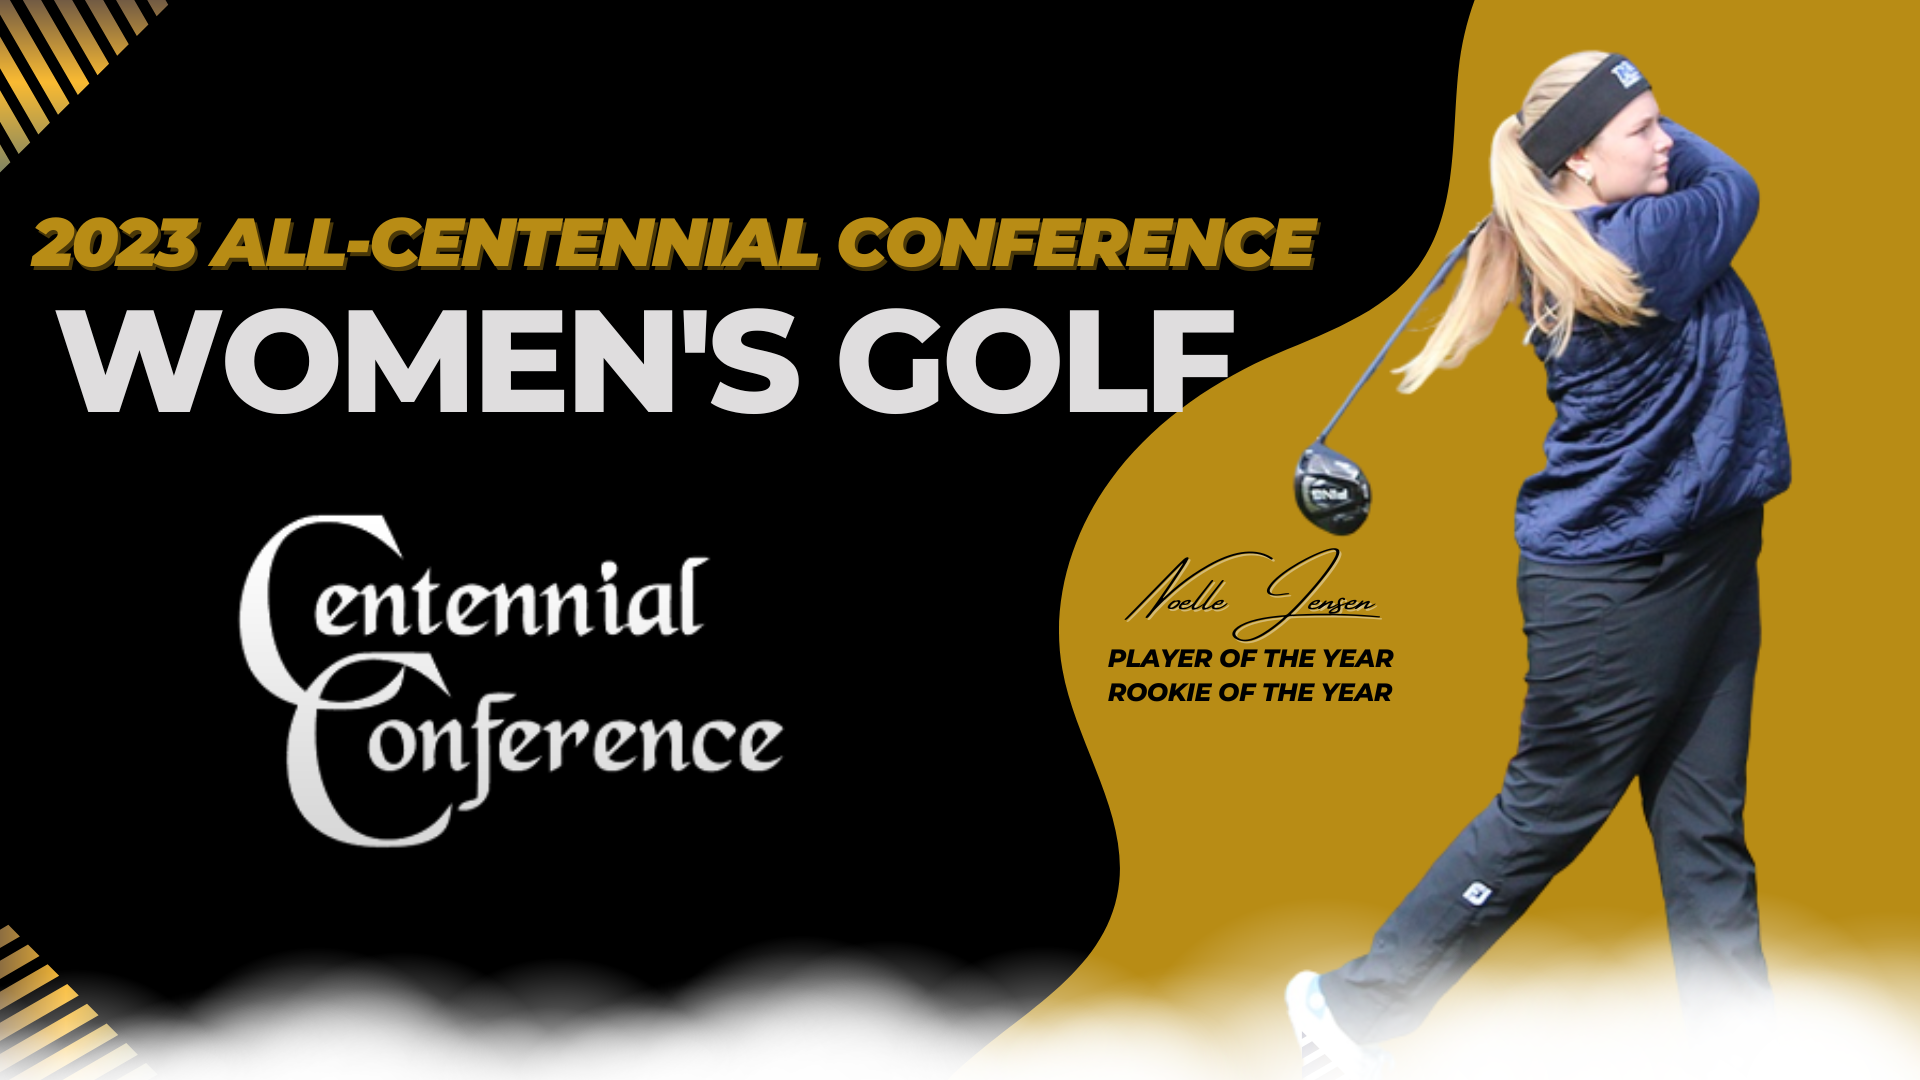 Jensen Sweeps Major Awards on All-Centennial Women's Golf Team